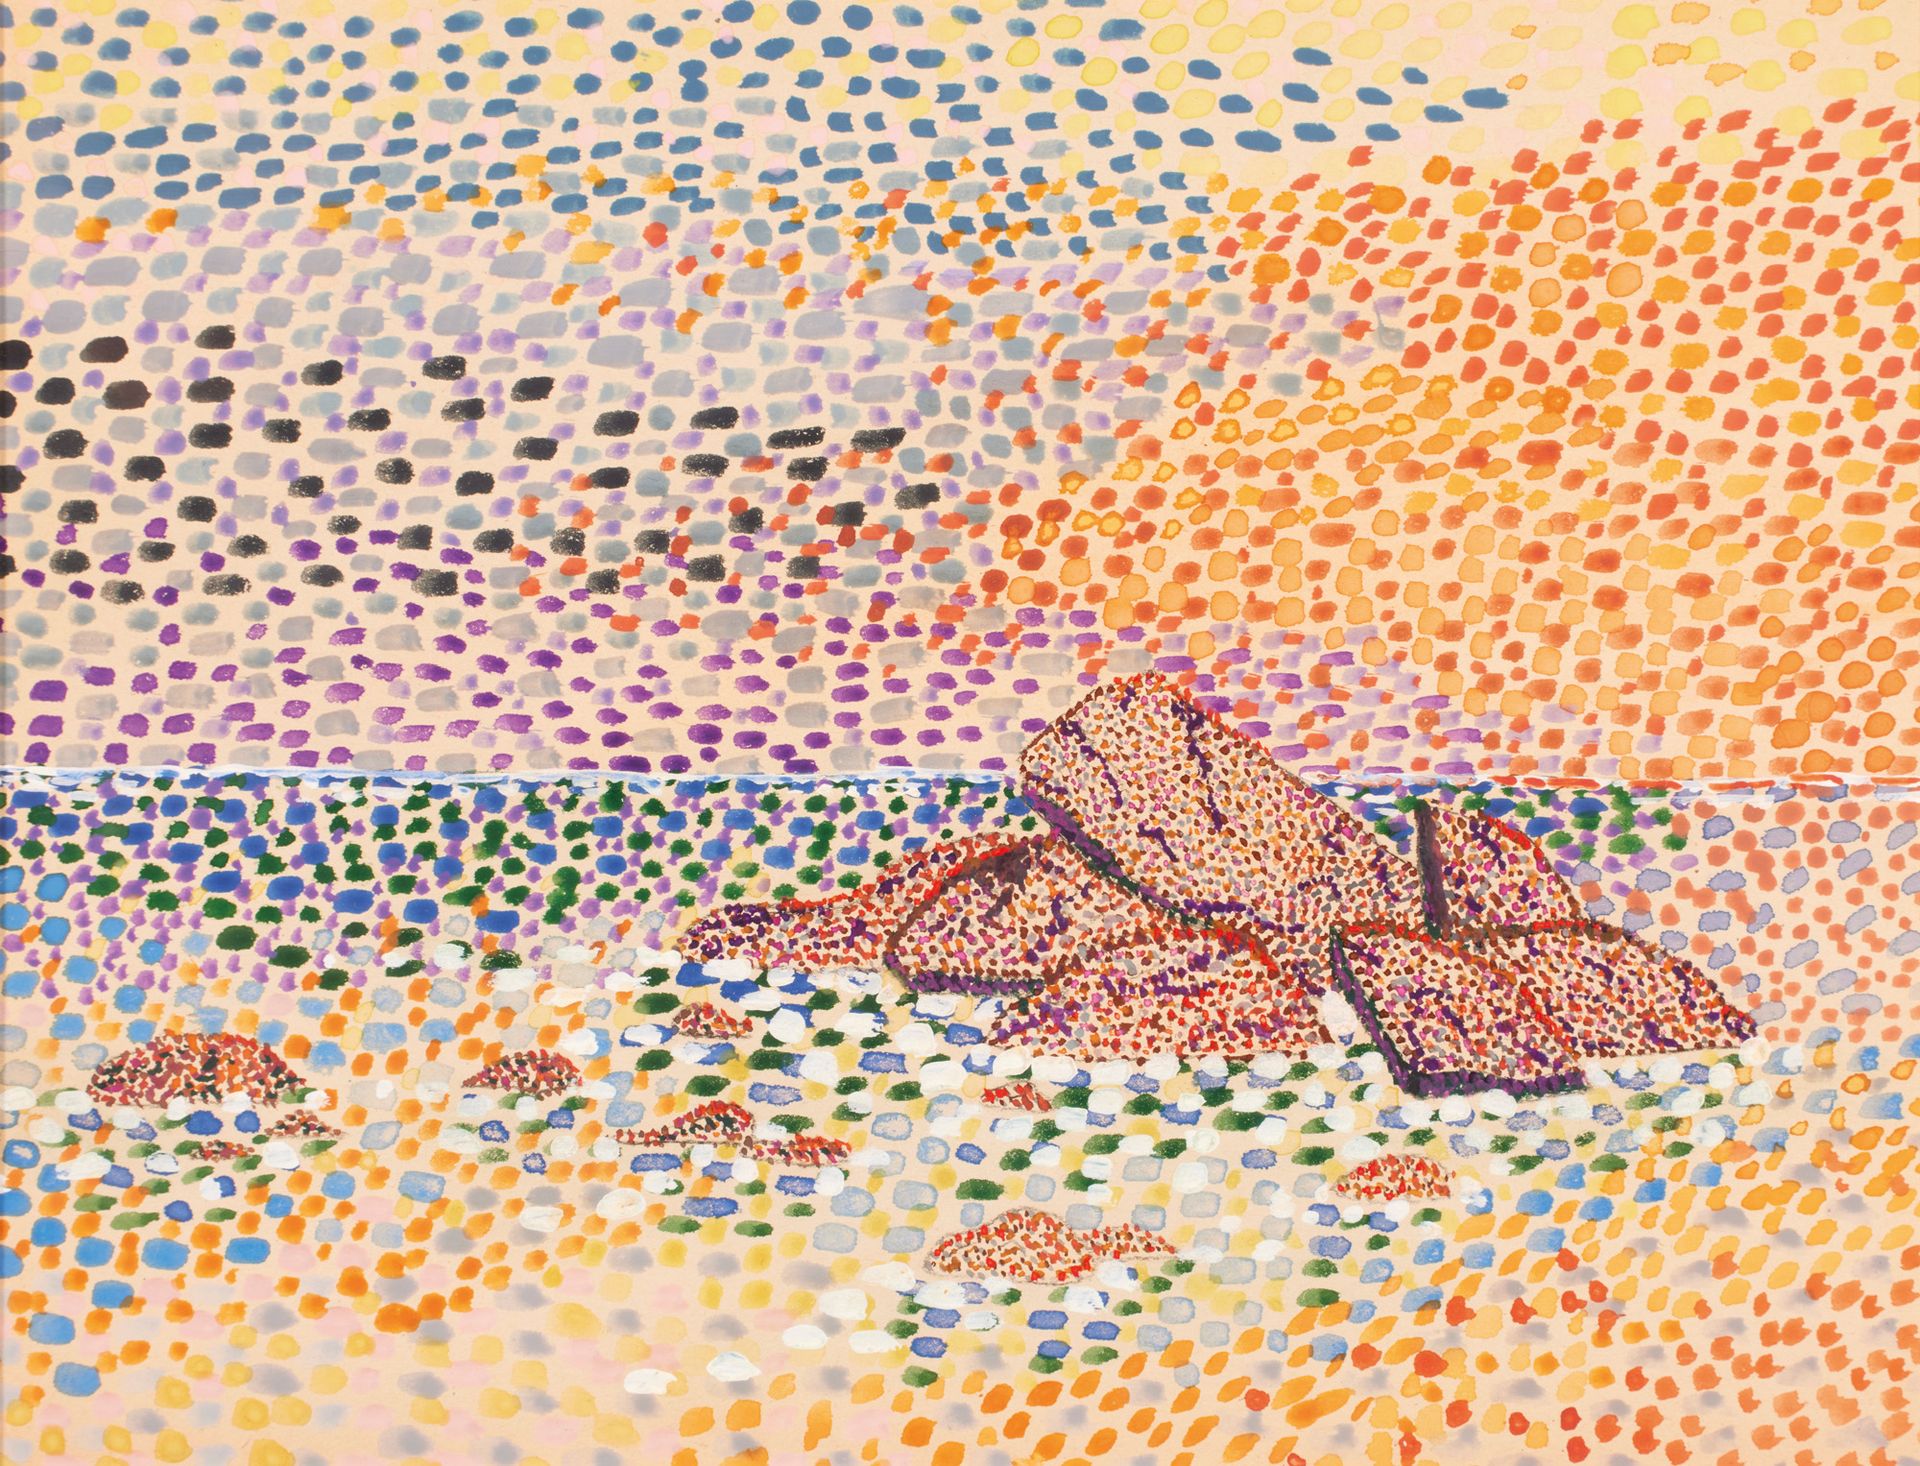 École pointilliste XXème siècle Scuola divisionista 20° secolo

Sole al tramonto&hellip;